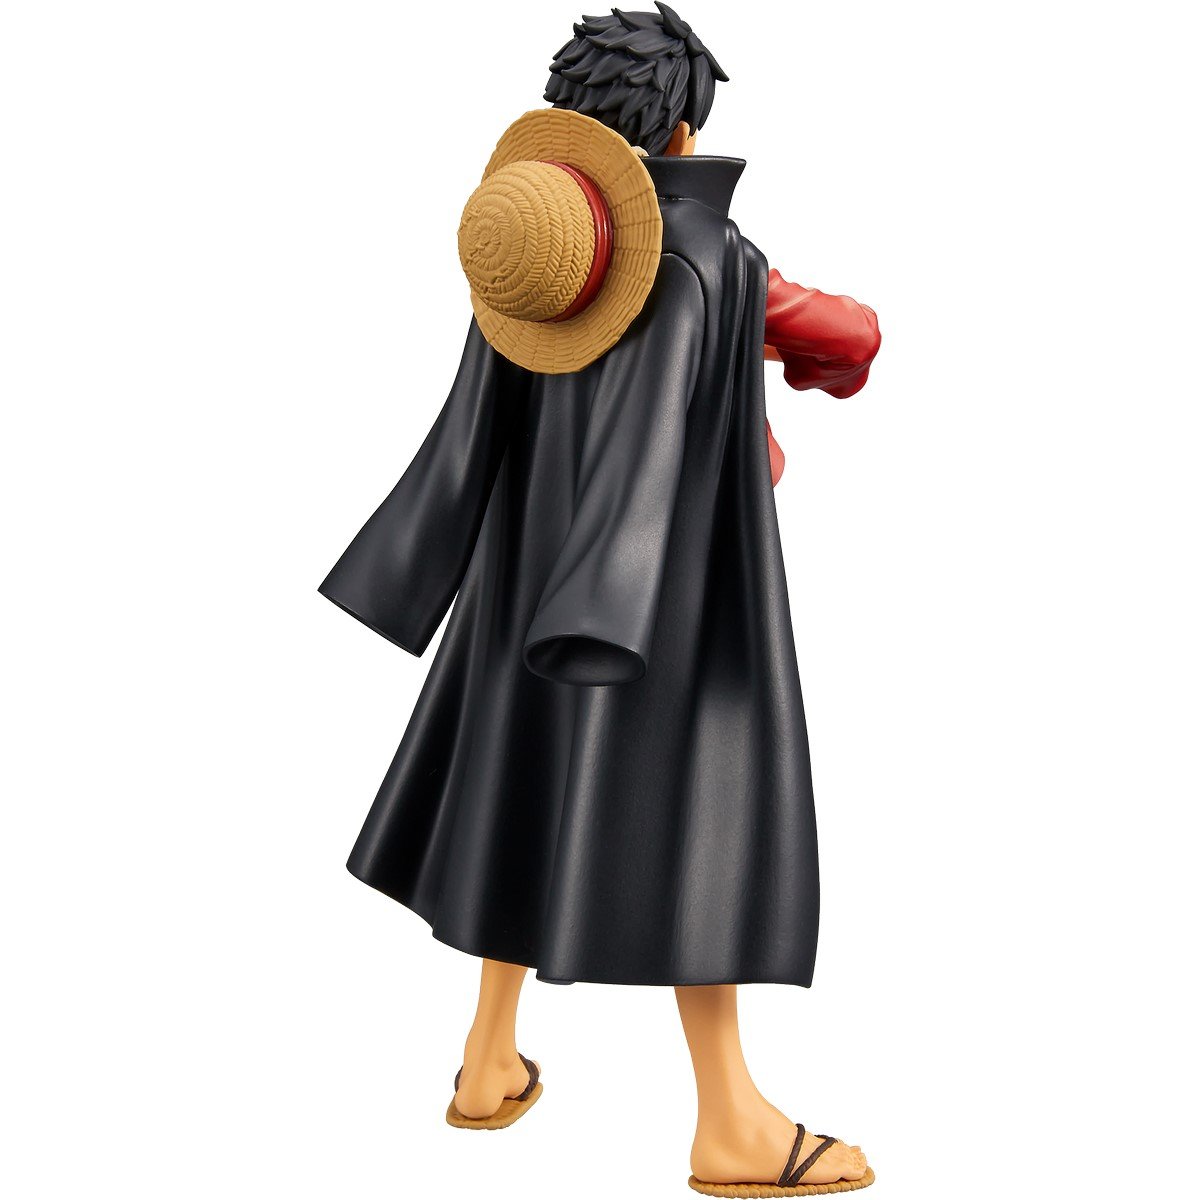 Figurine Anime Heroes One Piece - La Grande Récré